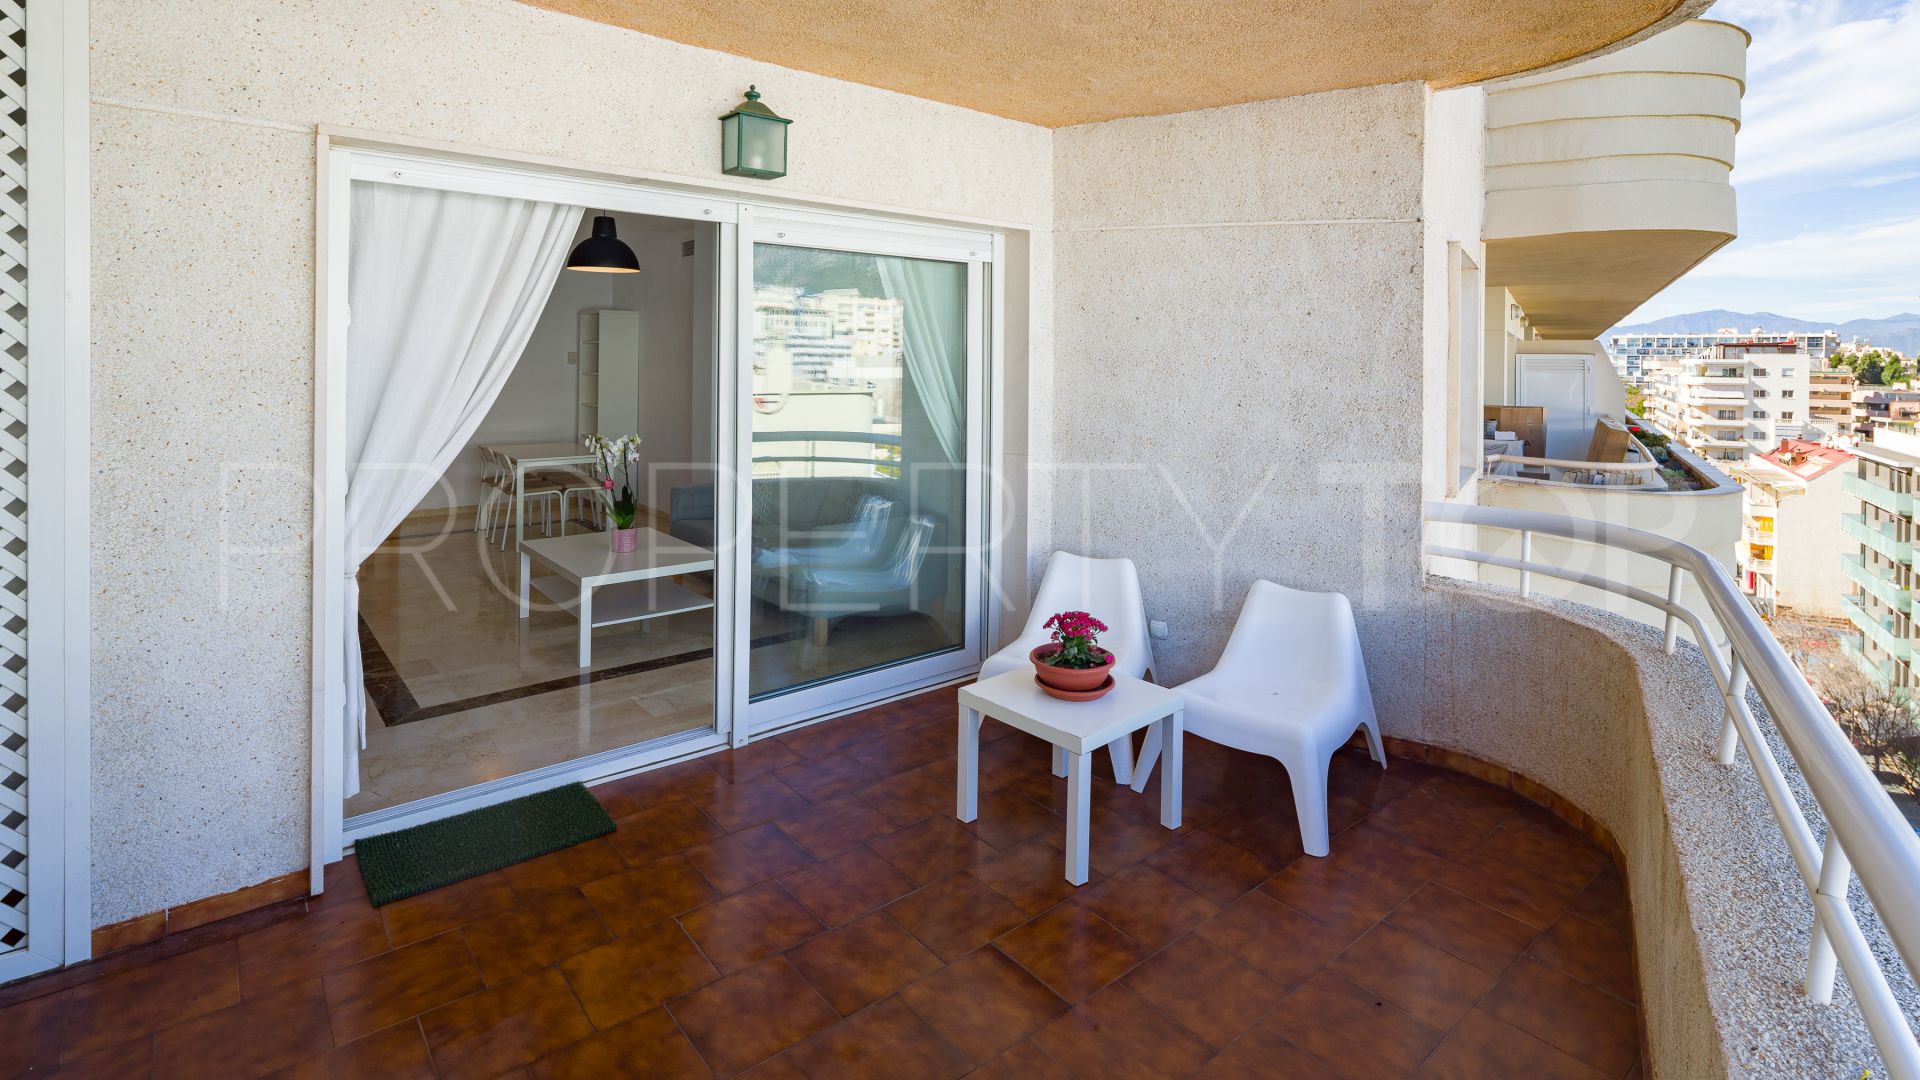 2 bedrooms apartment in Playa Bajadilla - Puertos for sale